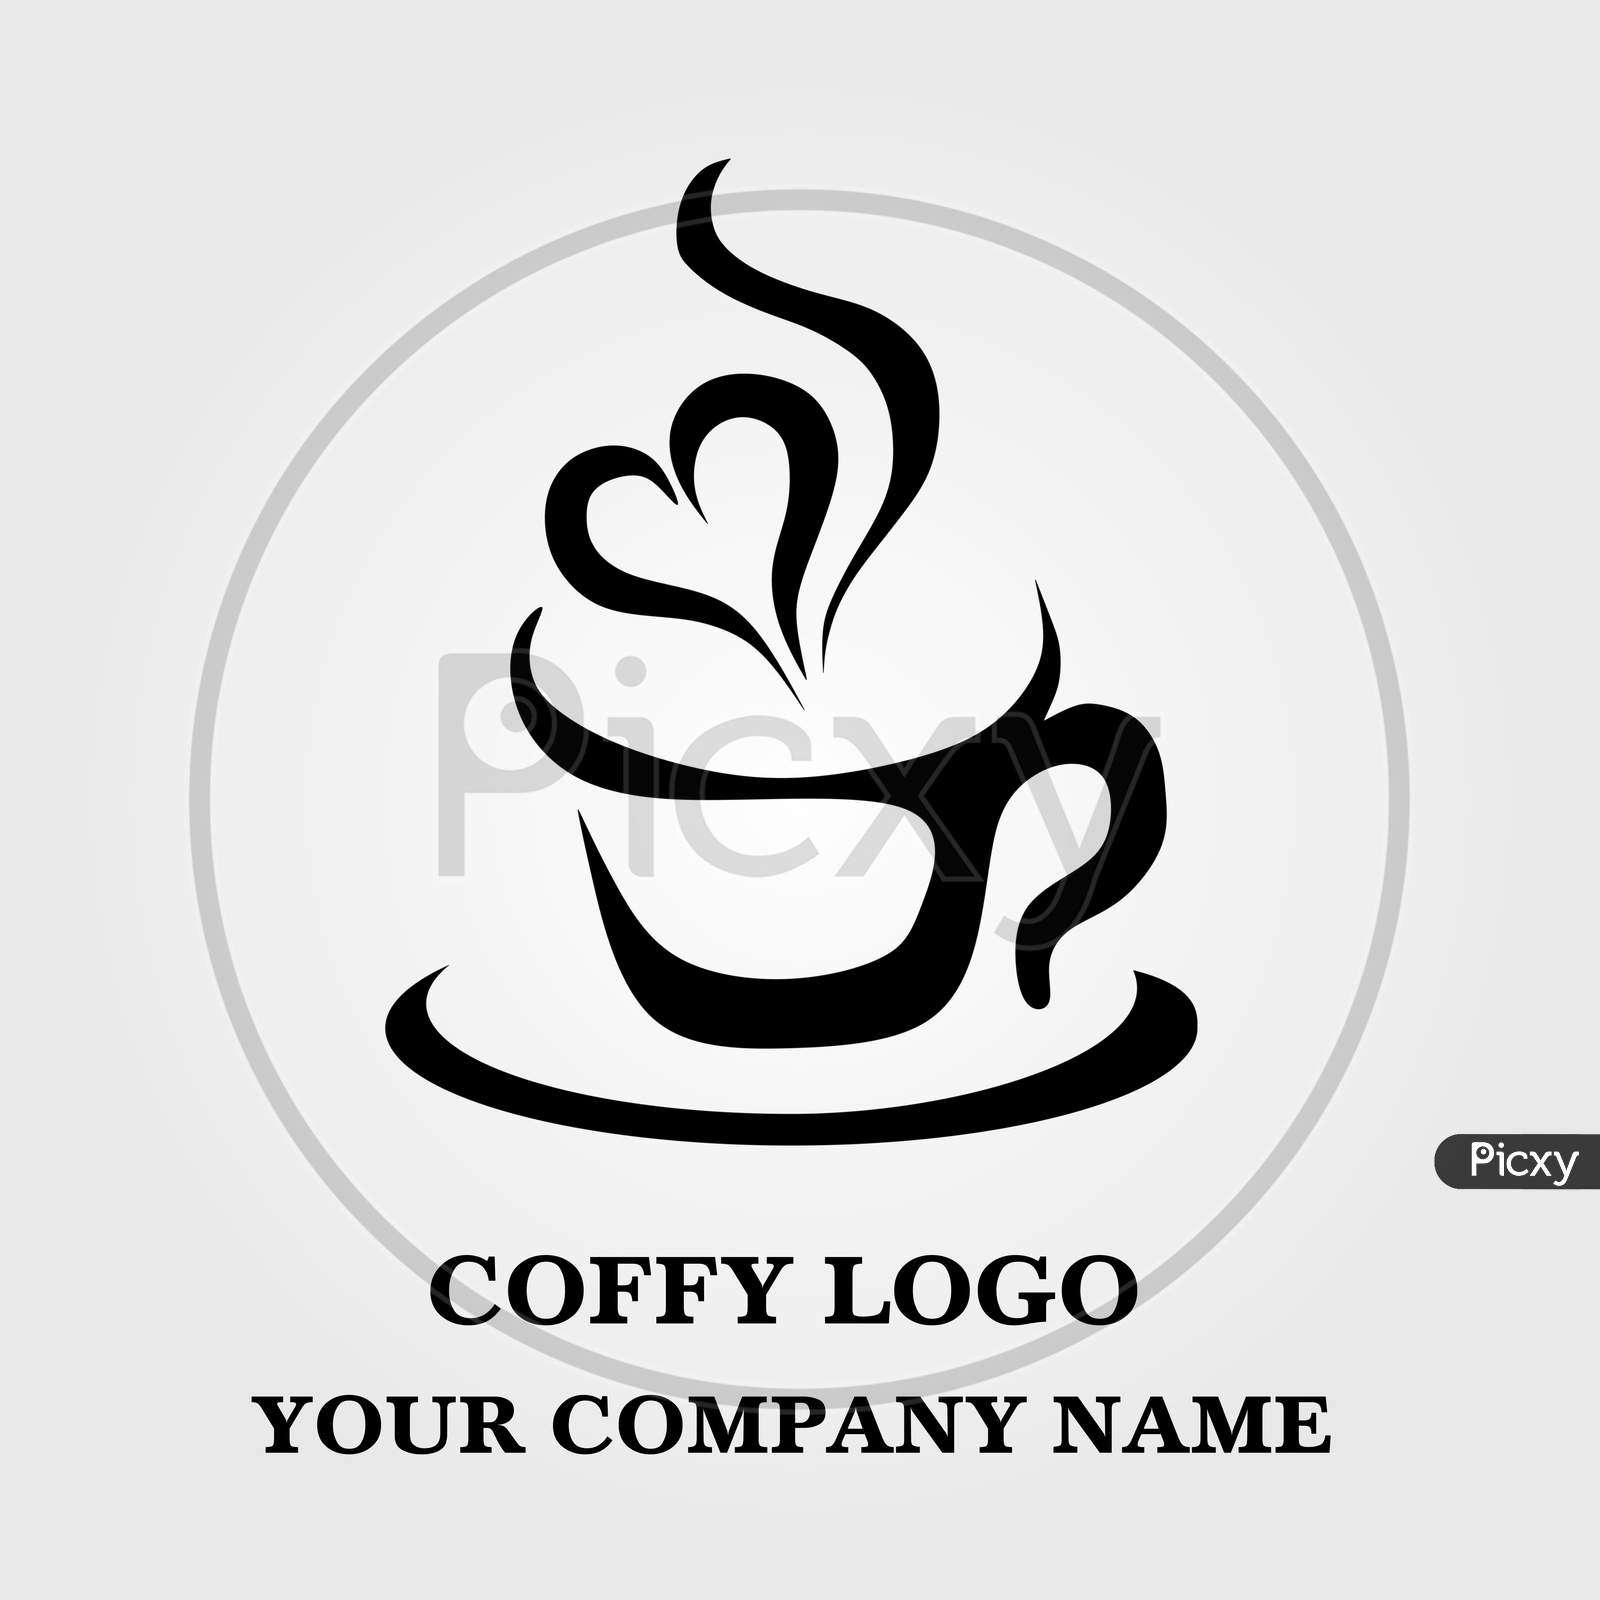 coffee symbol vector